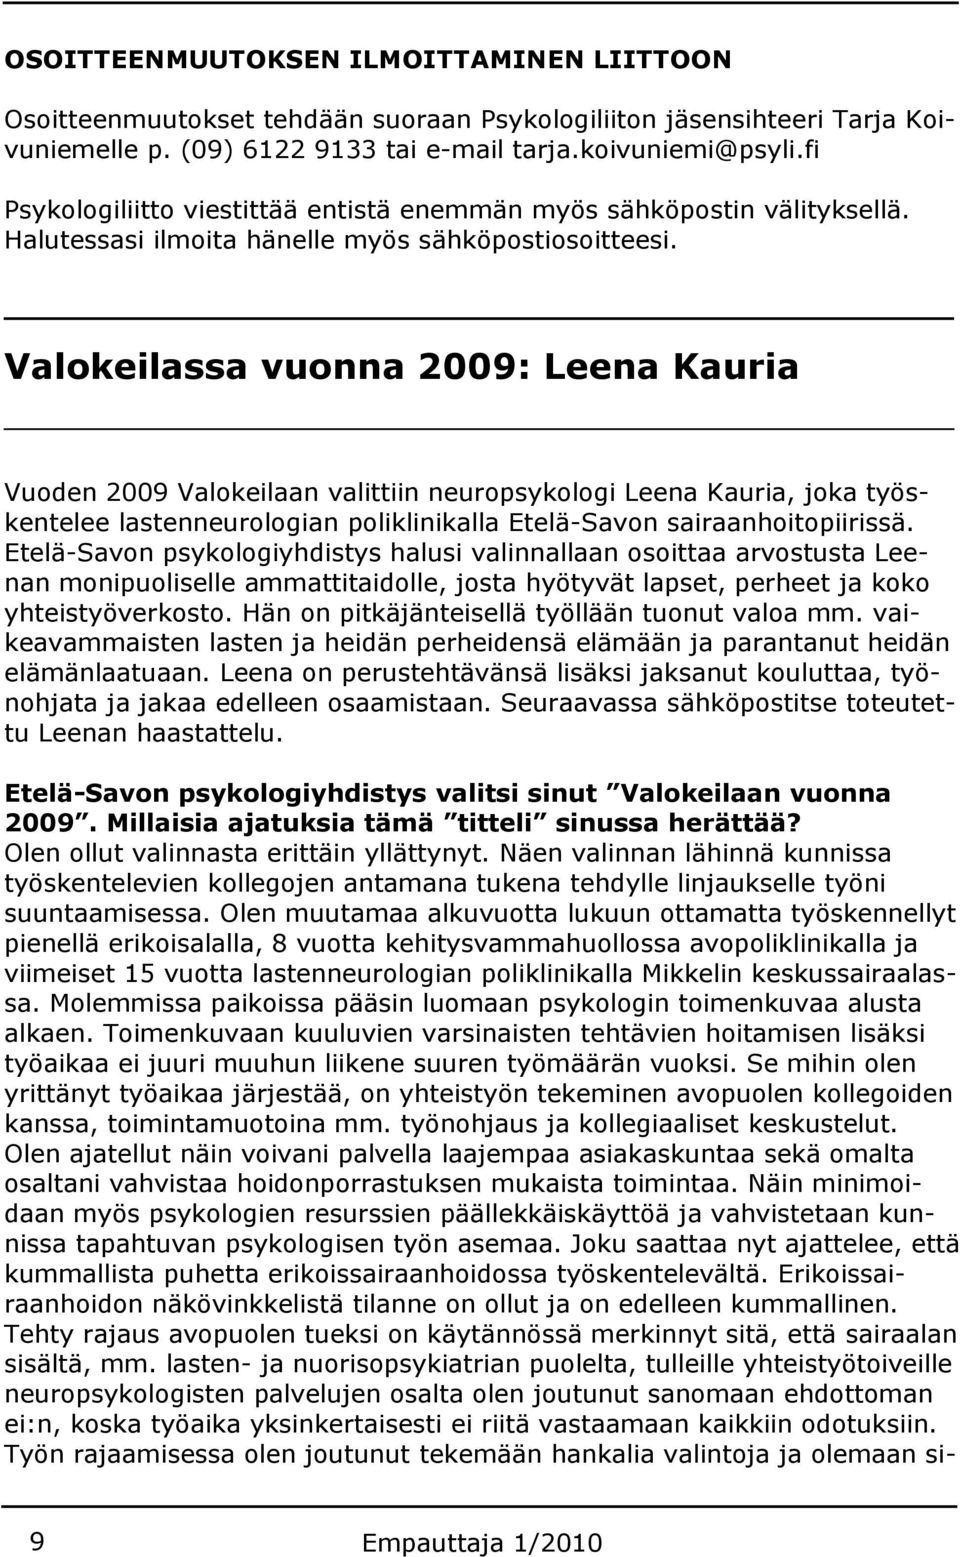 Valokeilassa vuonna 2009: Leena Kauria Vuoden 2009 Valokeilaan valittiin neuropsykologi Leena Kauria, joka työskentelee lastenneurologian poliklinikalla Etelä-Savon sairaanhoitopiirissä.